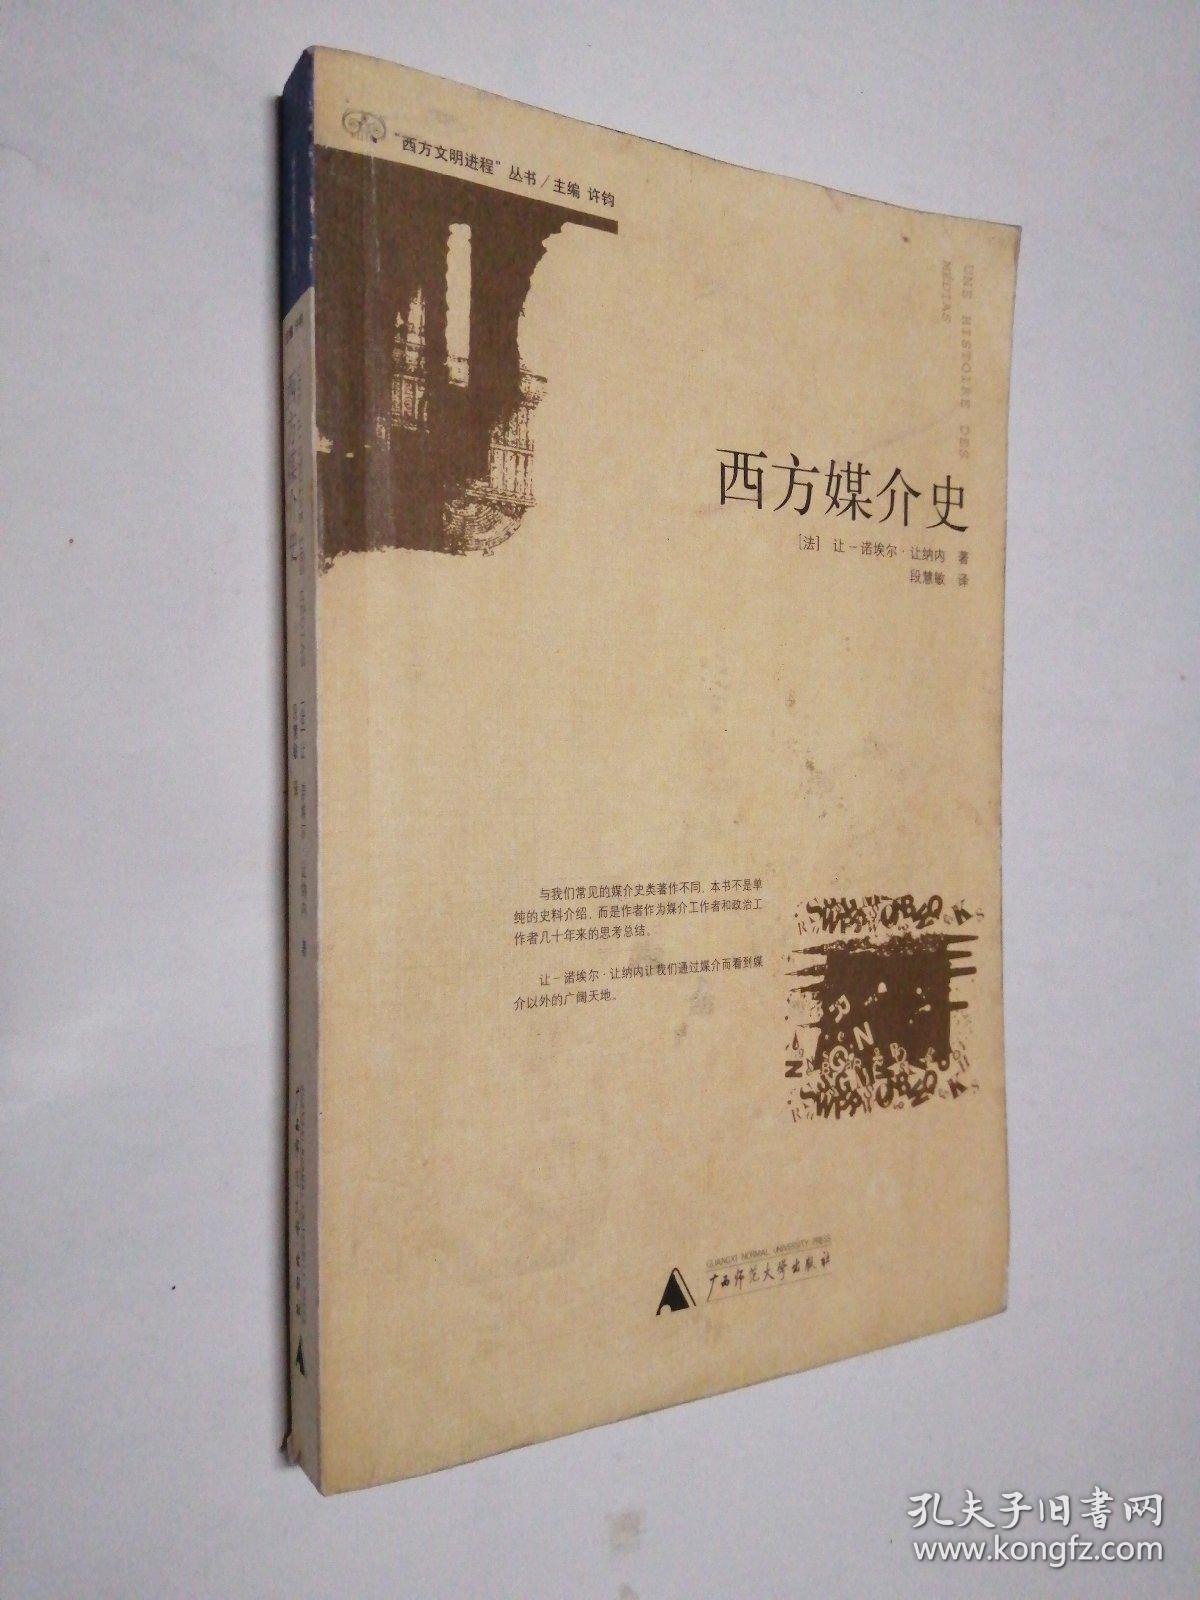 社会理论视野中的文学与文化_西方文学对中国现代文学的影响 从宏观视野分析_全球化社会理论和全球文化pdf